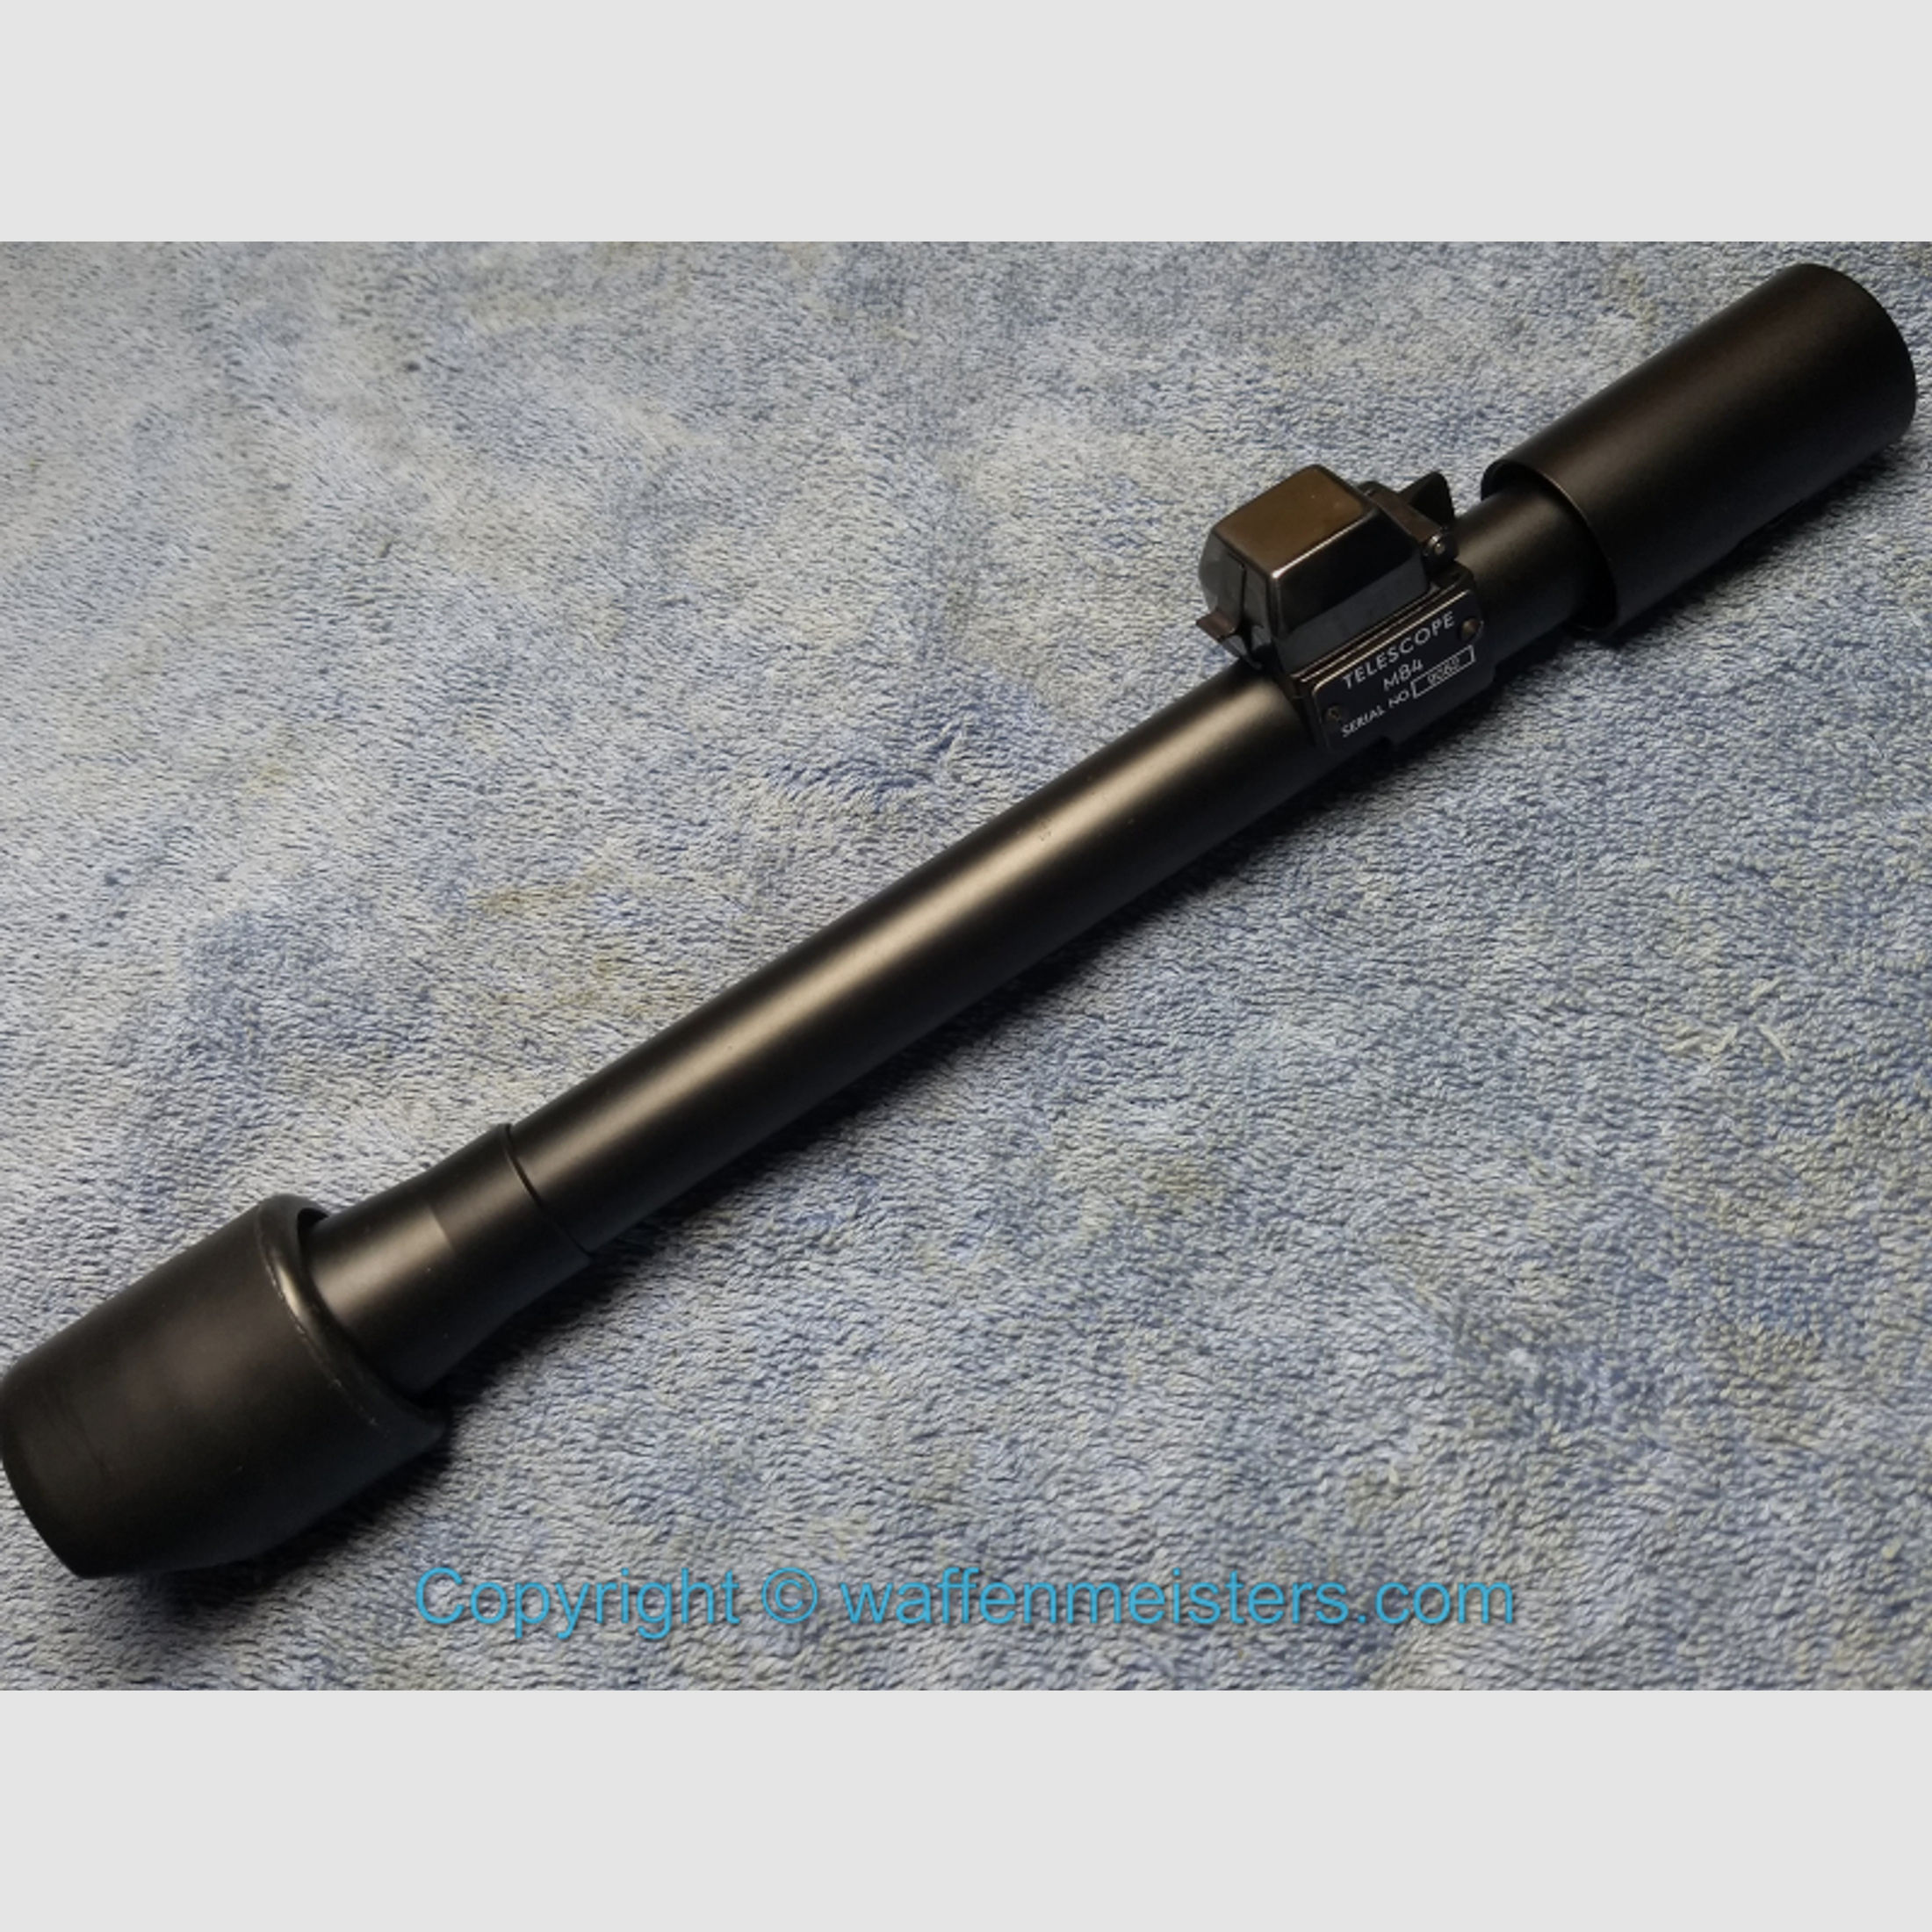 M84 Zielfernrohr für die M1D Garand, 1903A4, M1 Carbine M-84 US